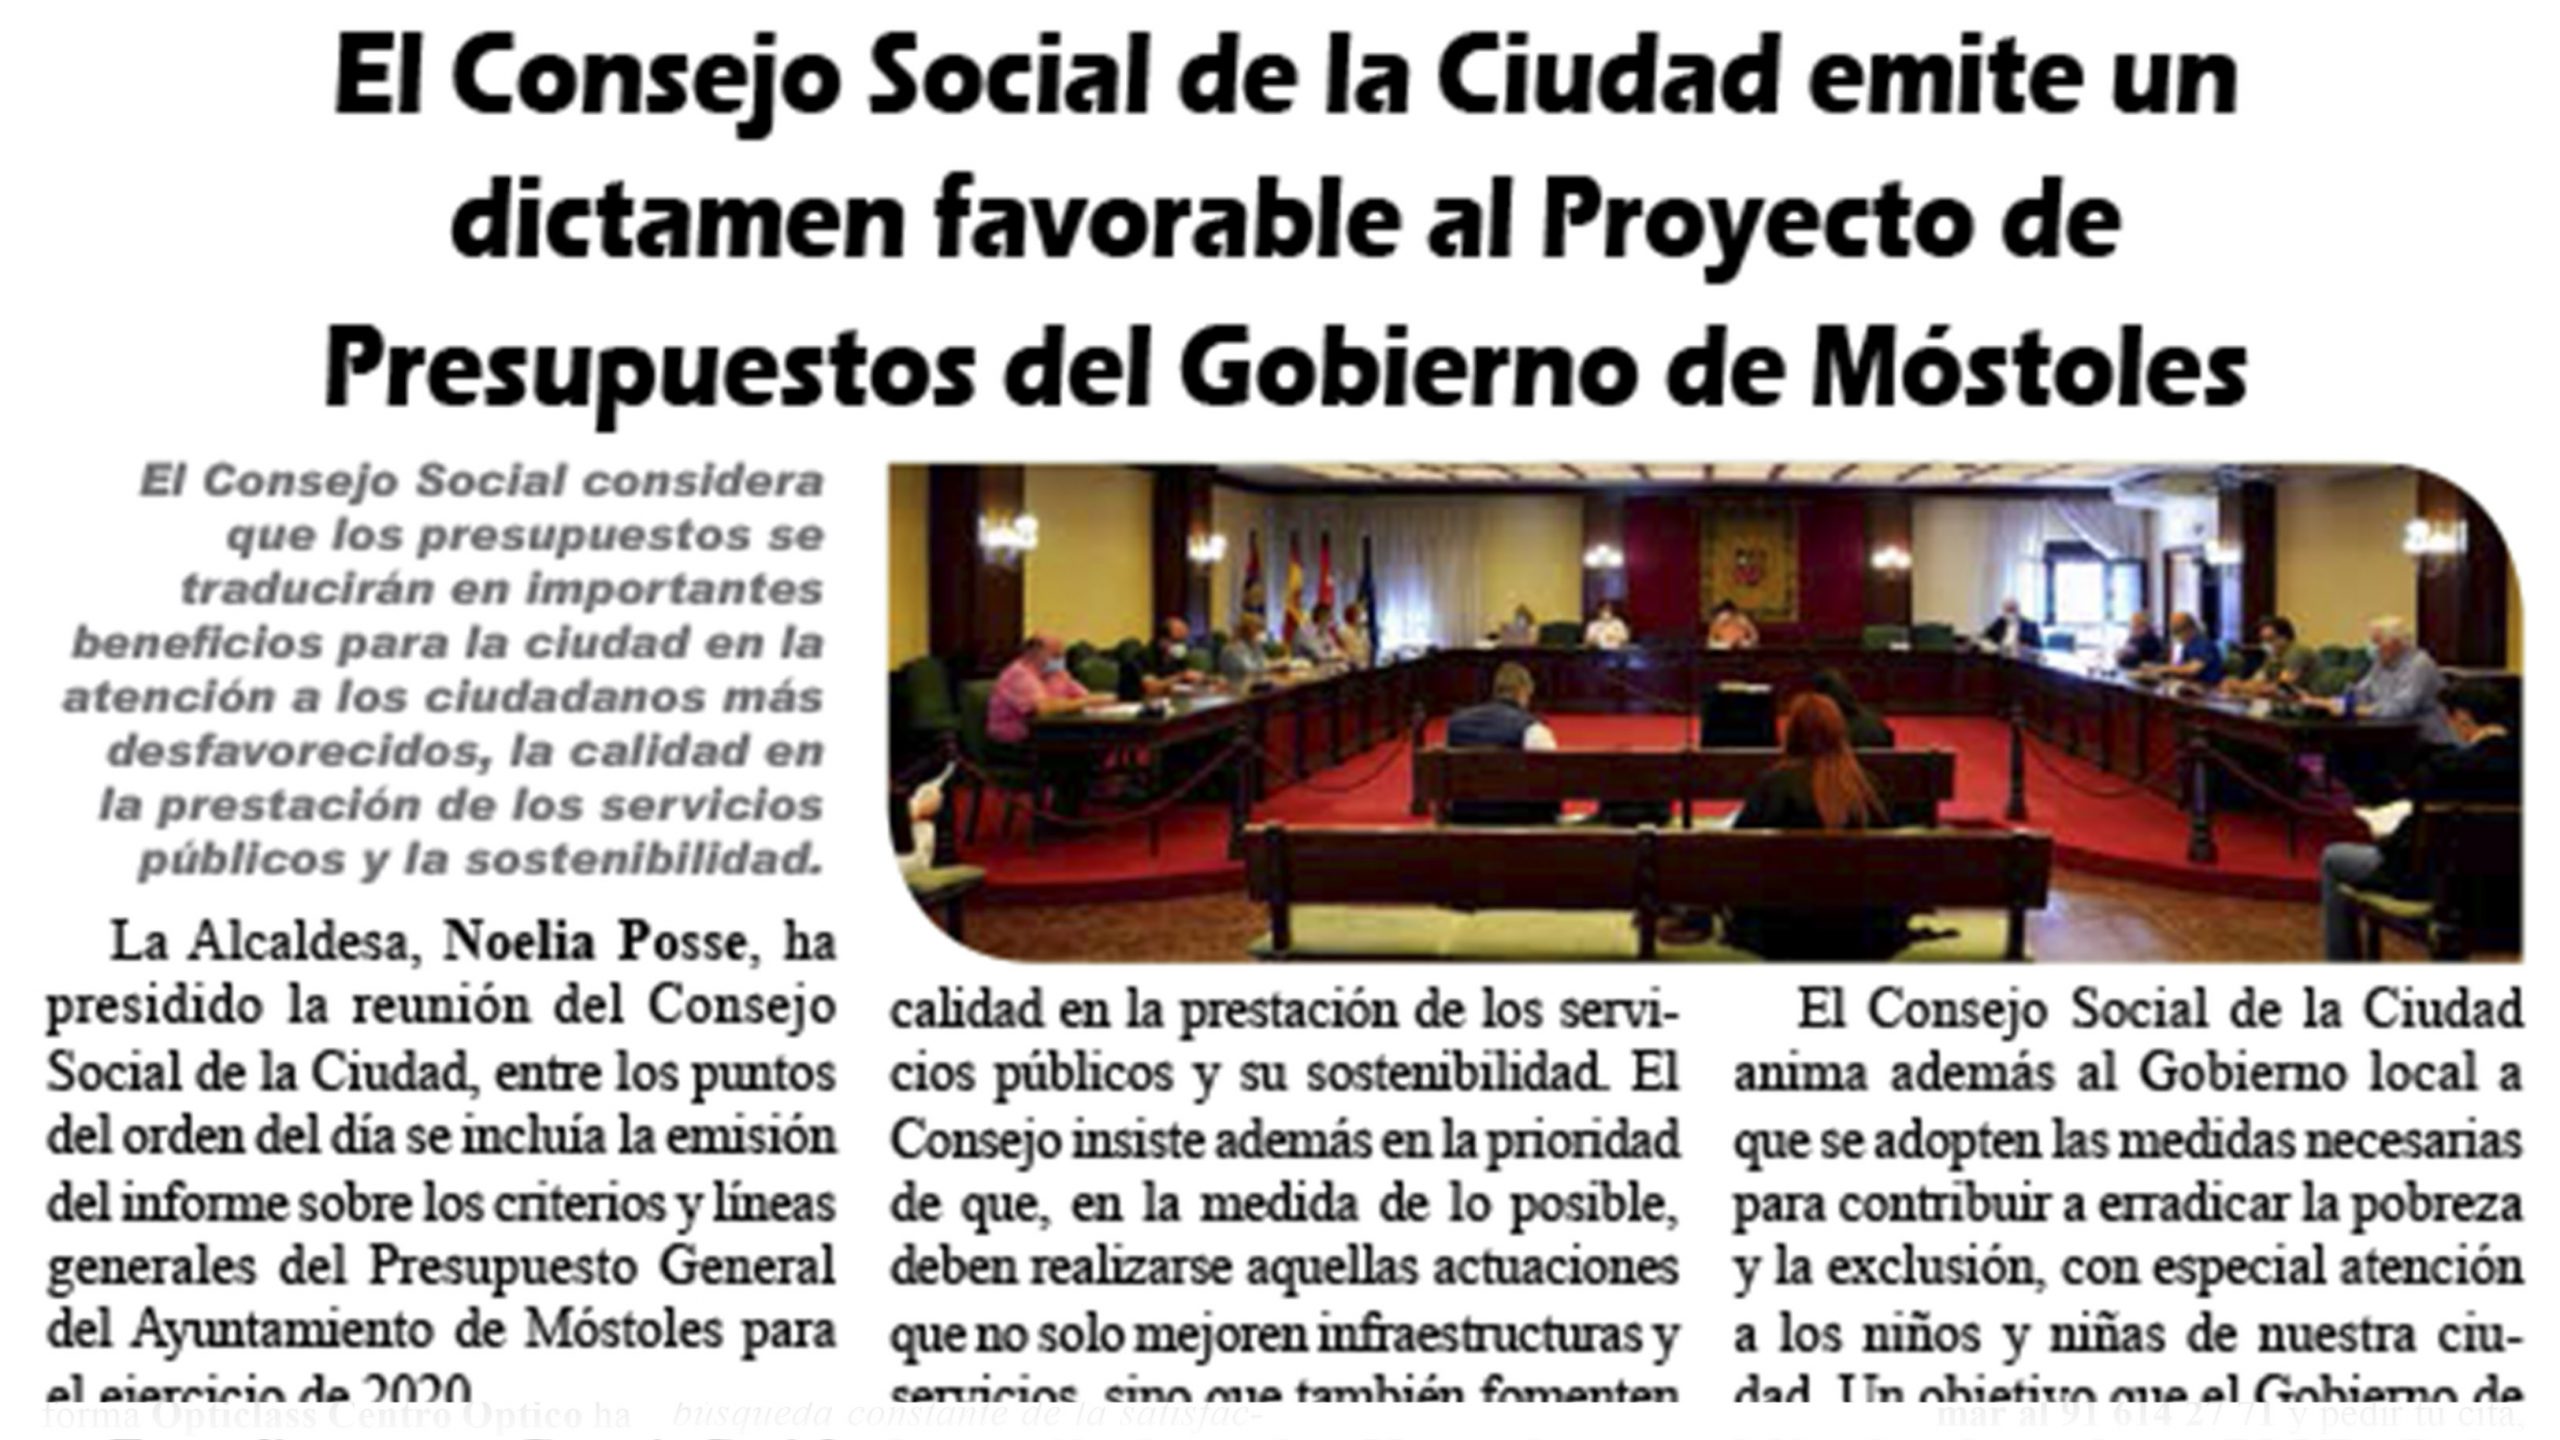 El Consejo Social de la Ciudad emite un dictamen favorable al Proyecto de Presupuestos del Gobierno de Móstoles